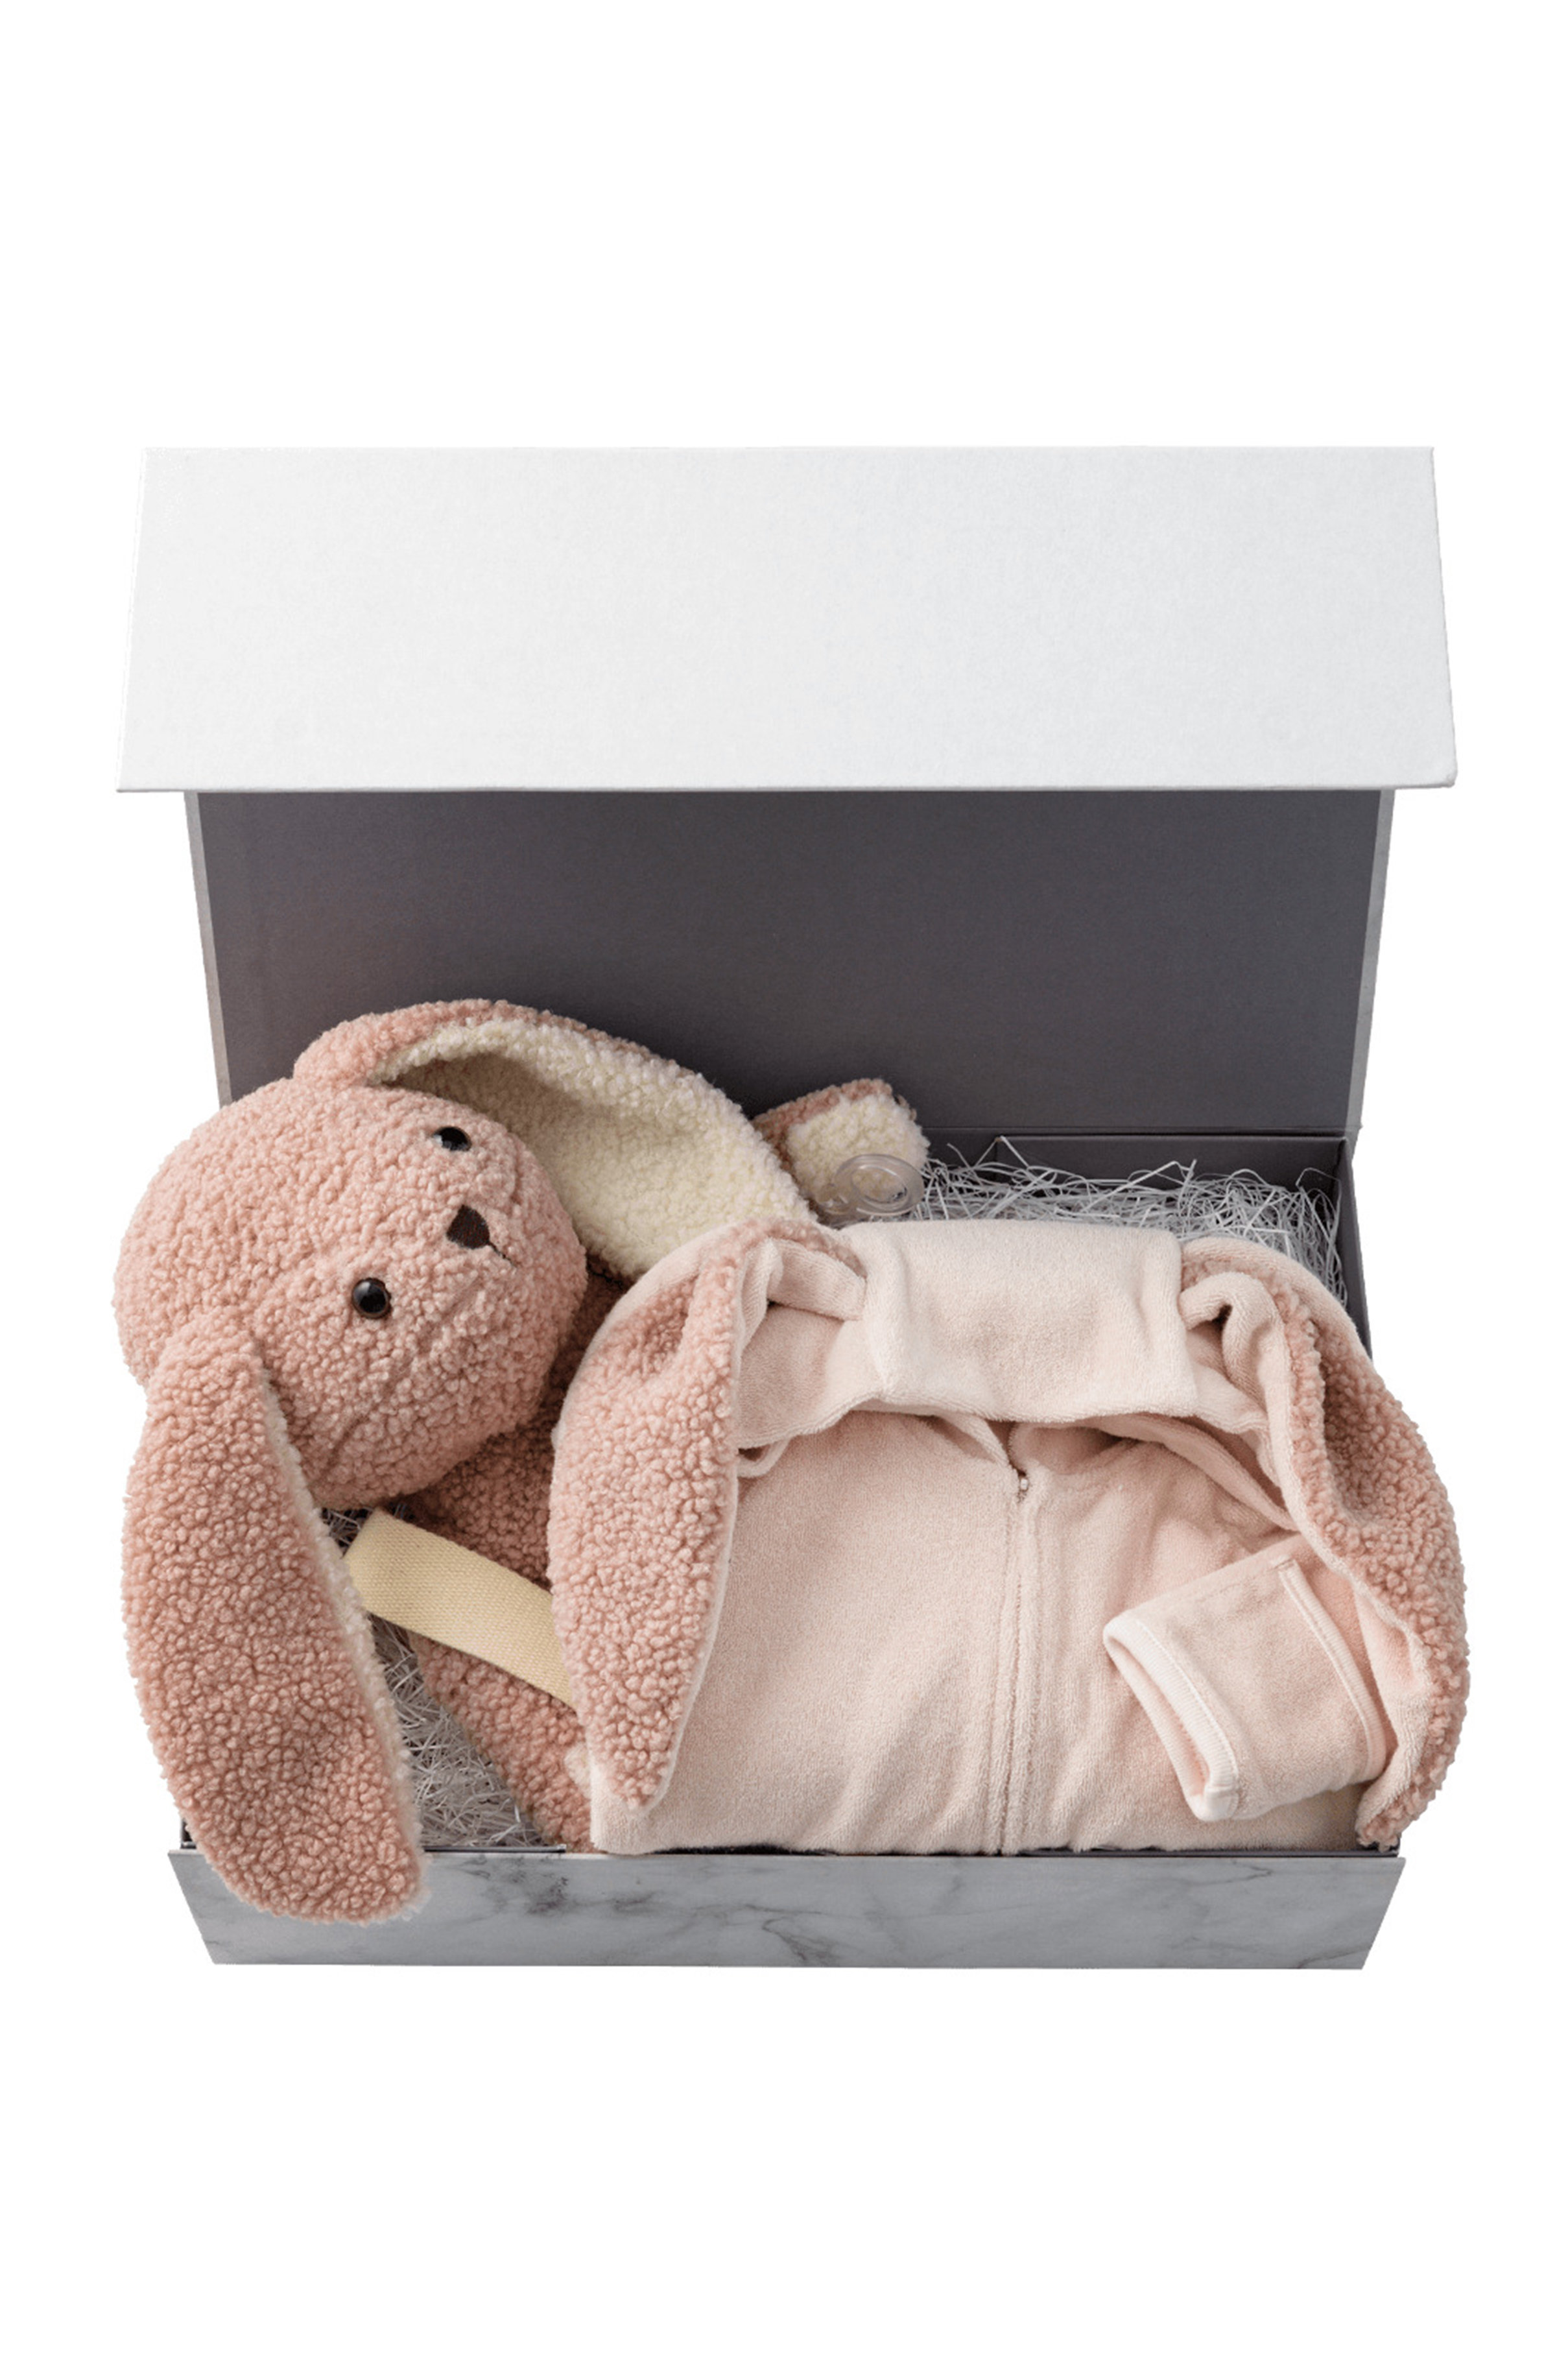  MARLMARL 【Baby】多機能ぬいぐるみ＋ナイトウエア sweet dream box (MAU1(ピンク) 60-70?) マールマール ELLE SHOP